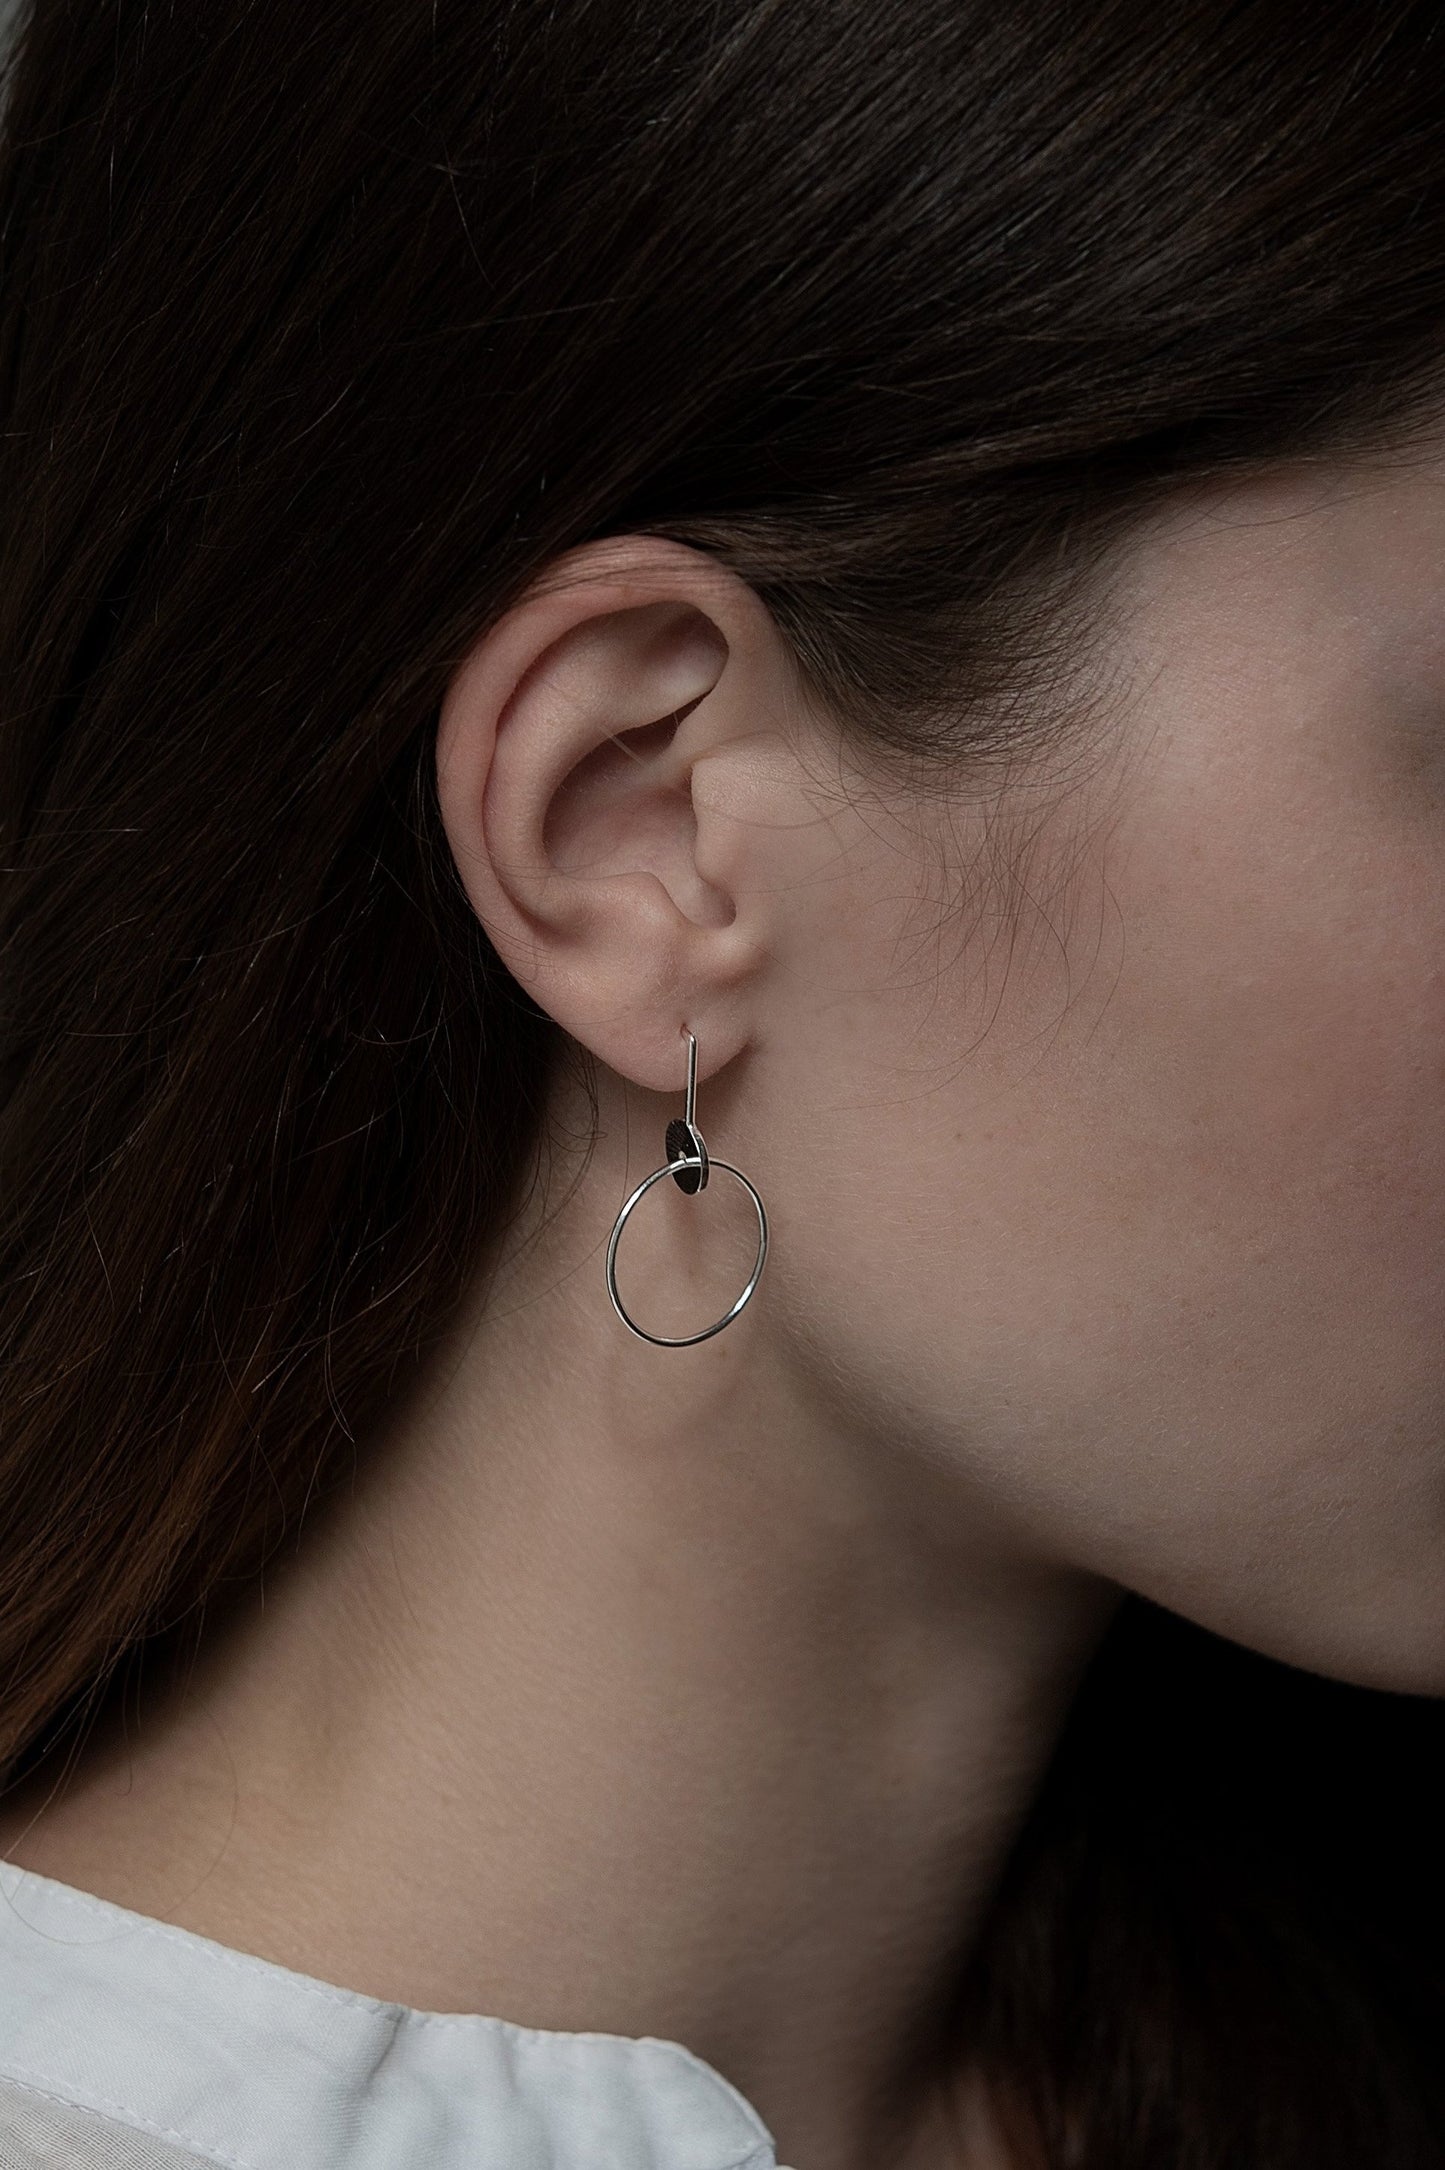 Long silver earrings by AgJc